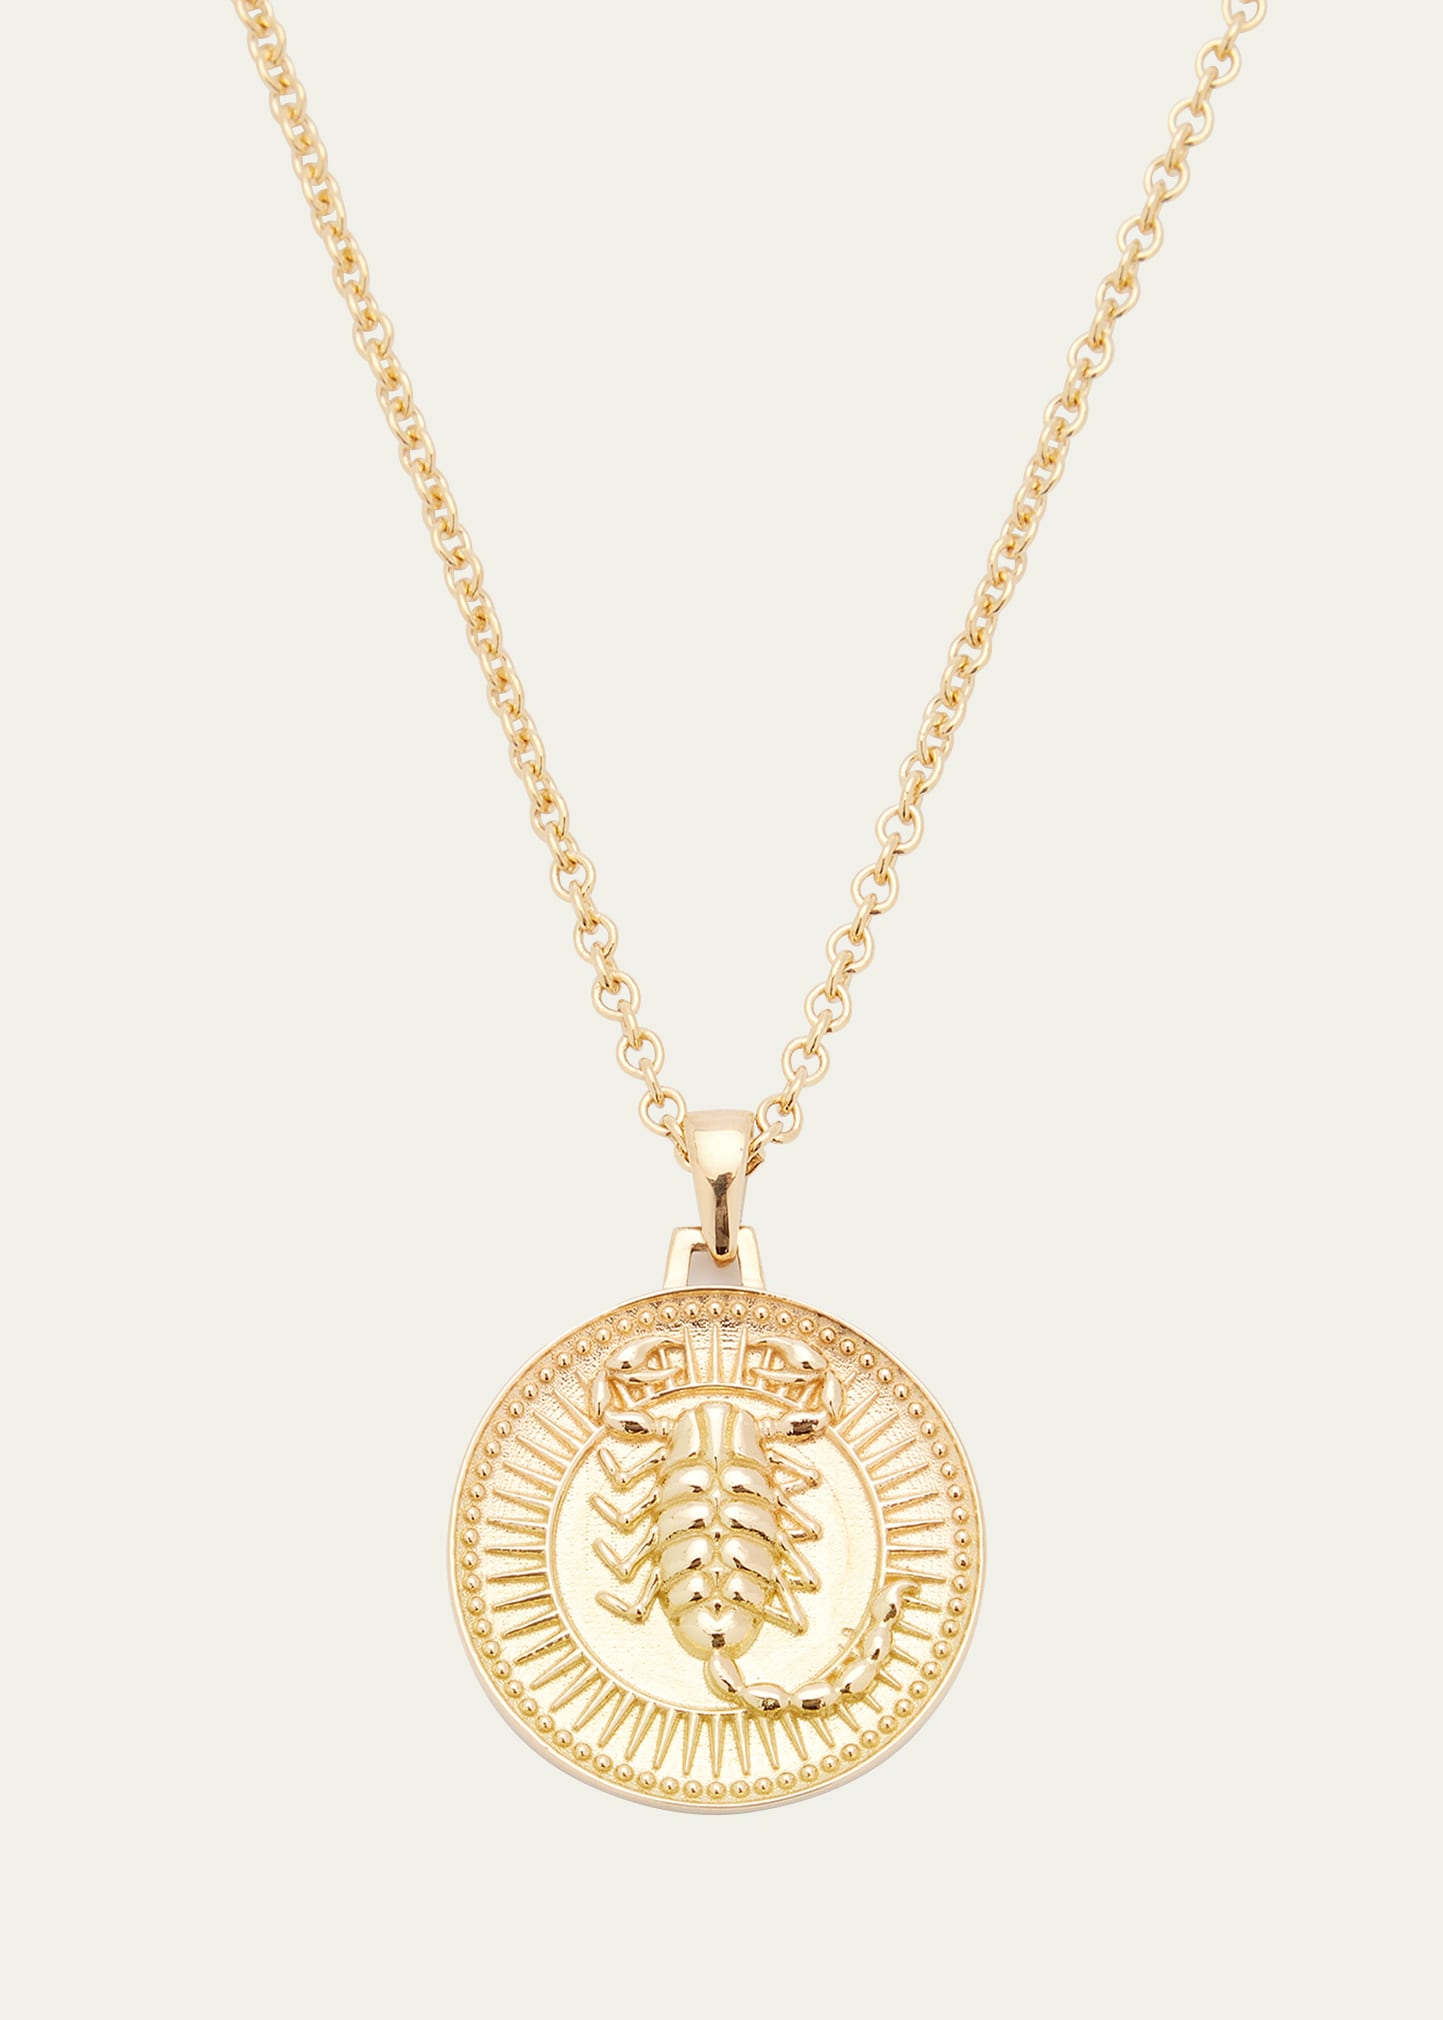 Futura Jewelry Fairmined Gold Scorpio Necklace